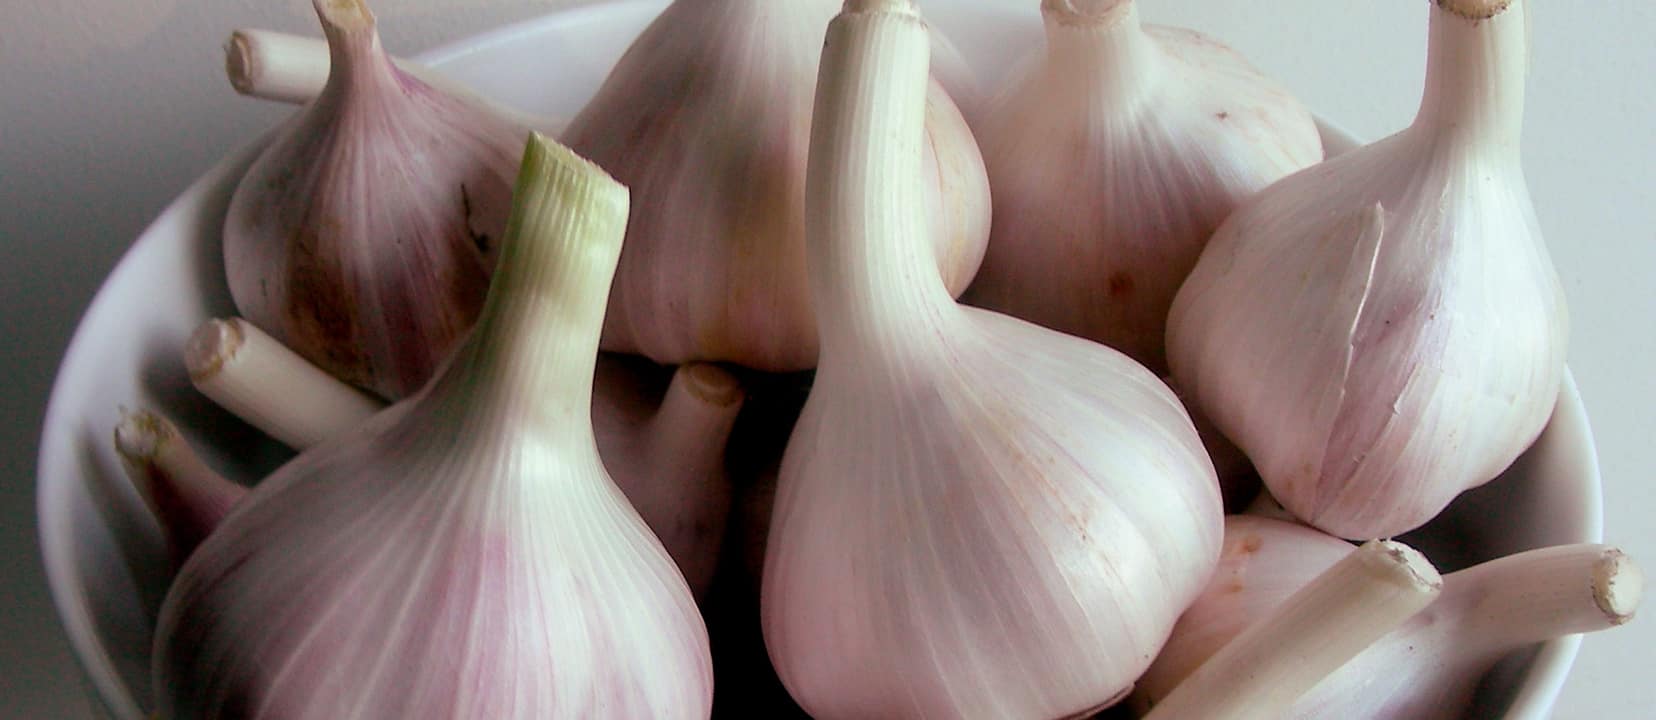 Garlic and Raisins to Prevent Premature Birth